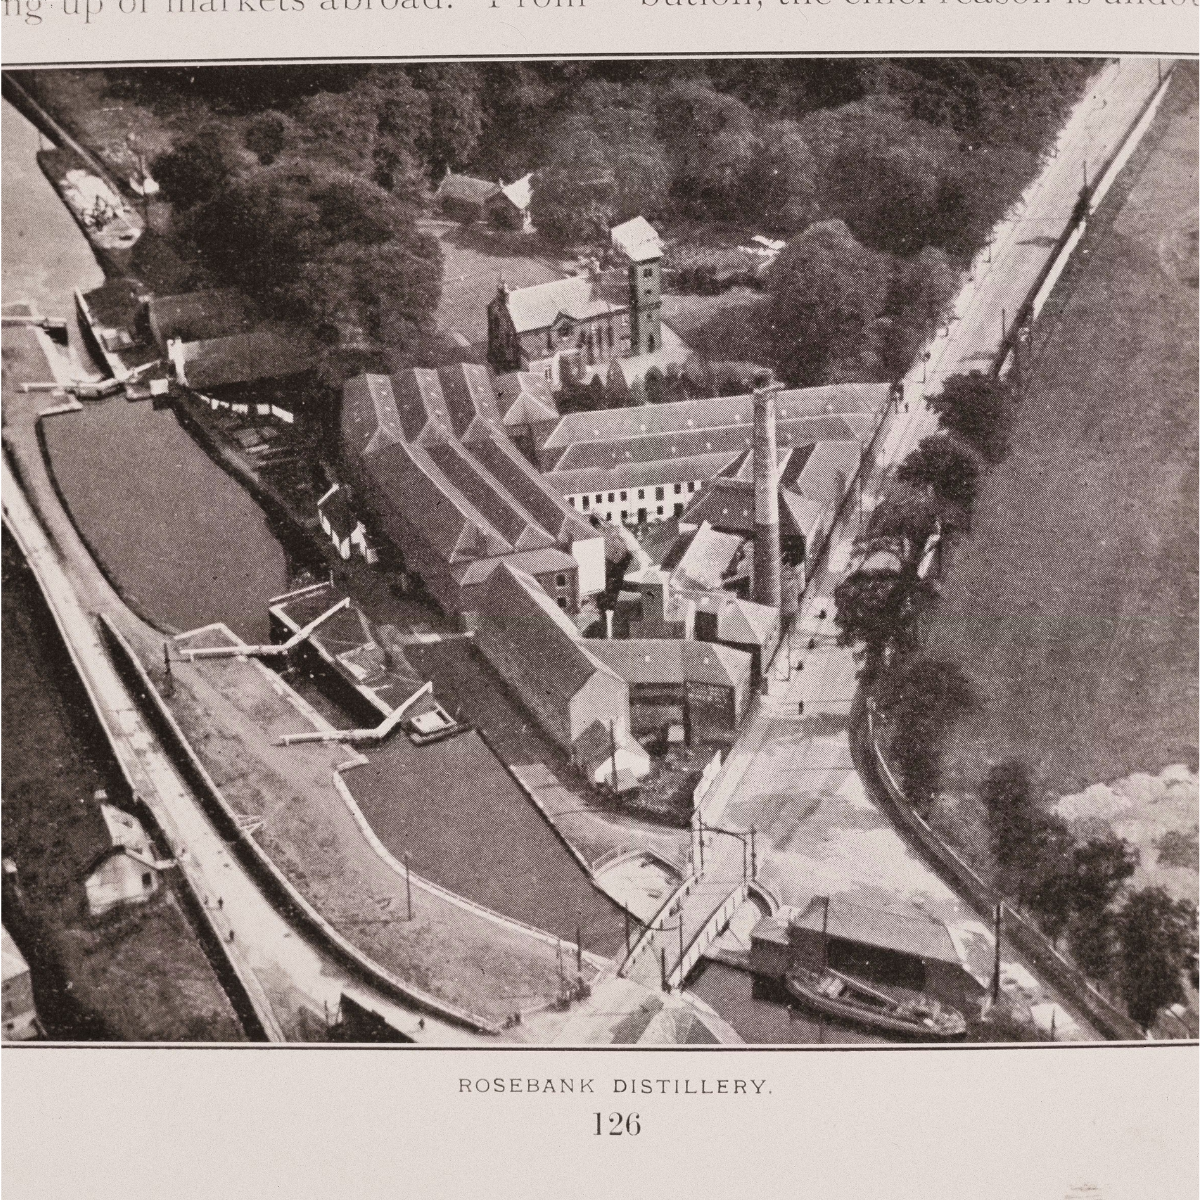 From Rosebank Distillery archives